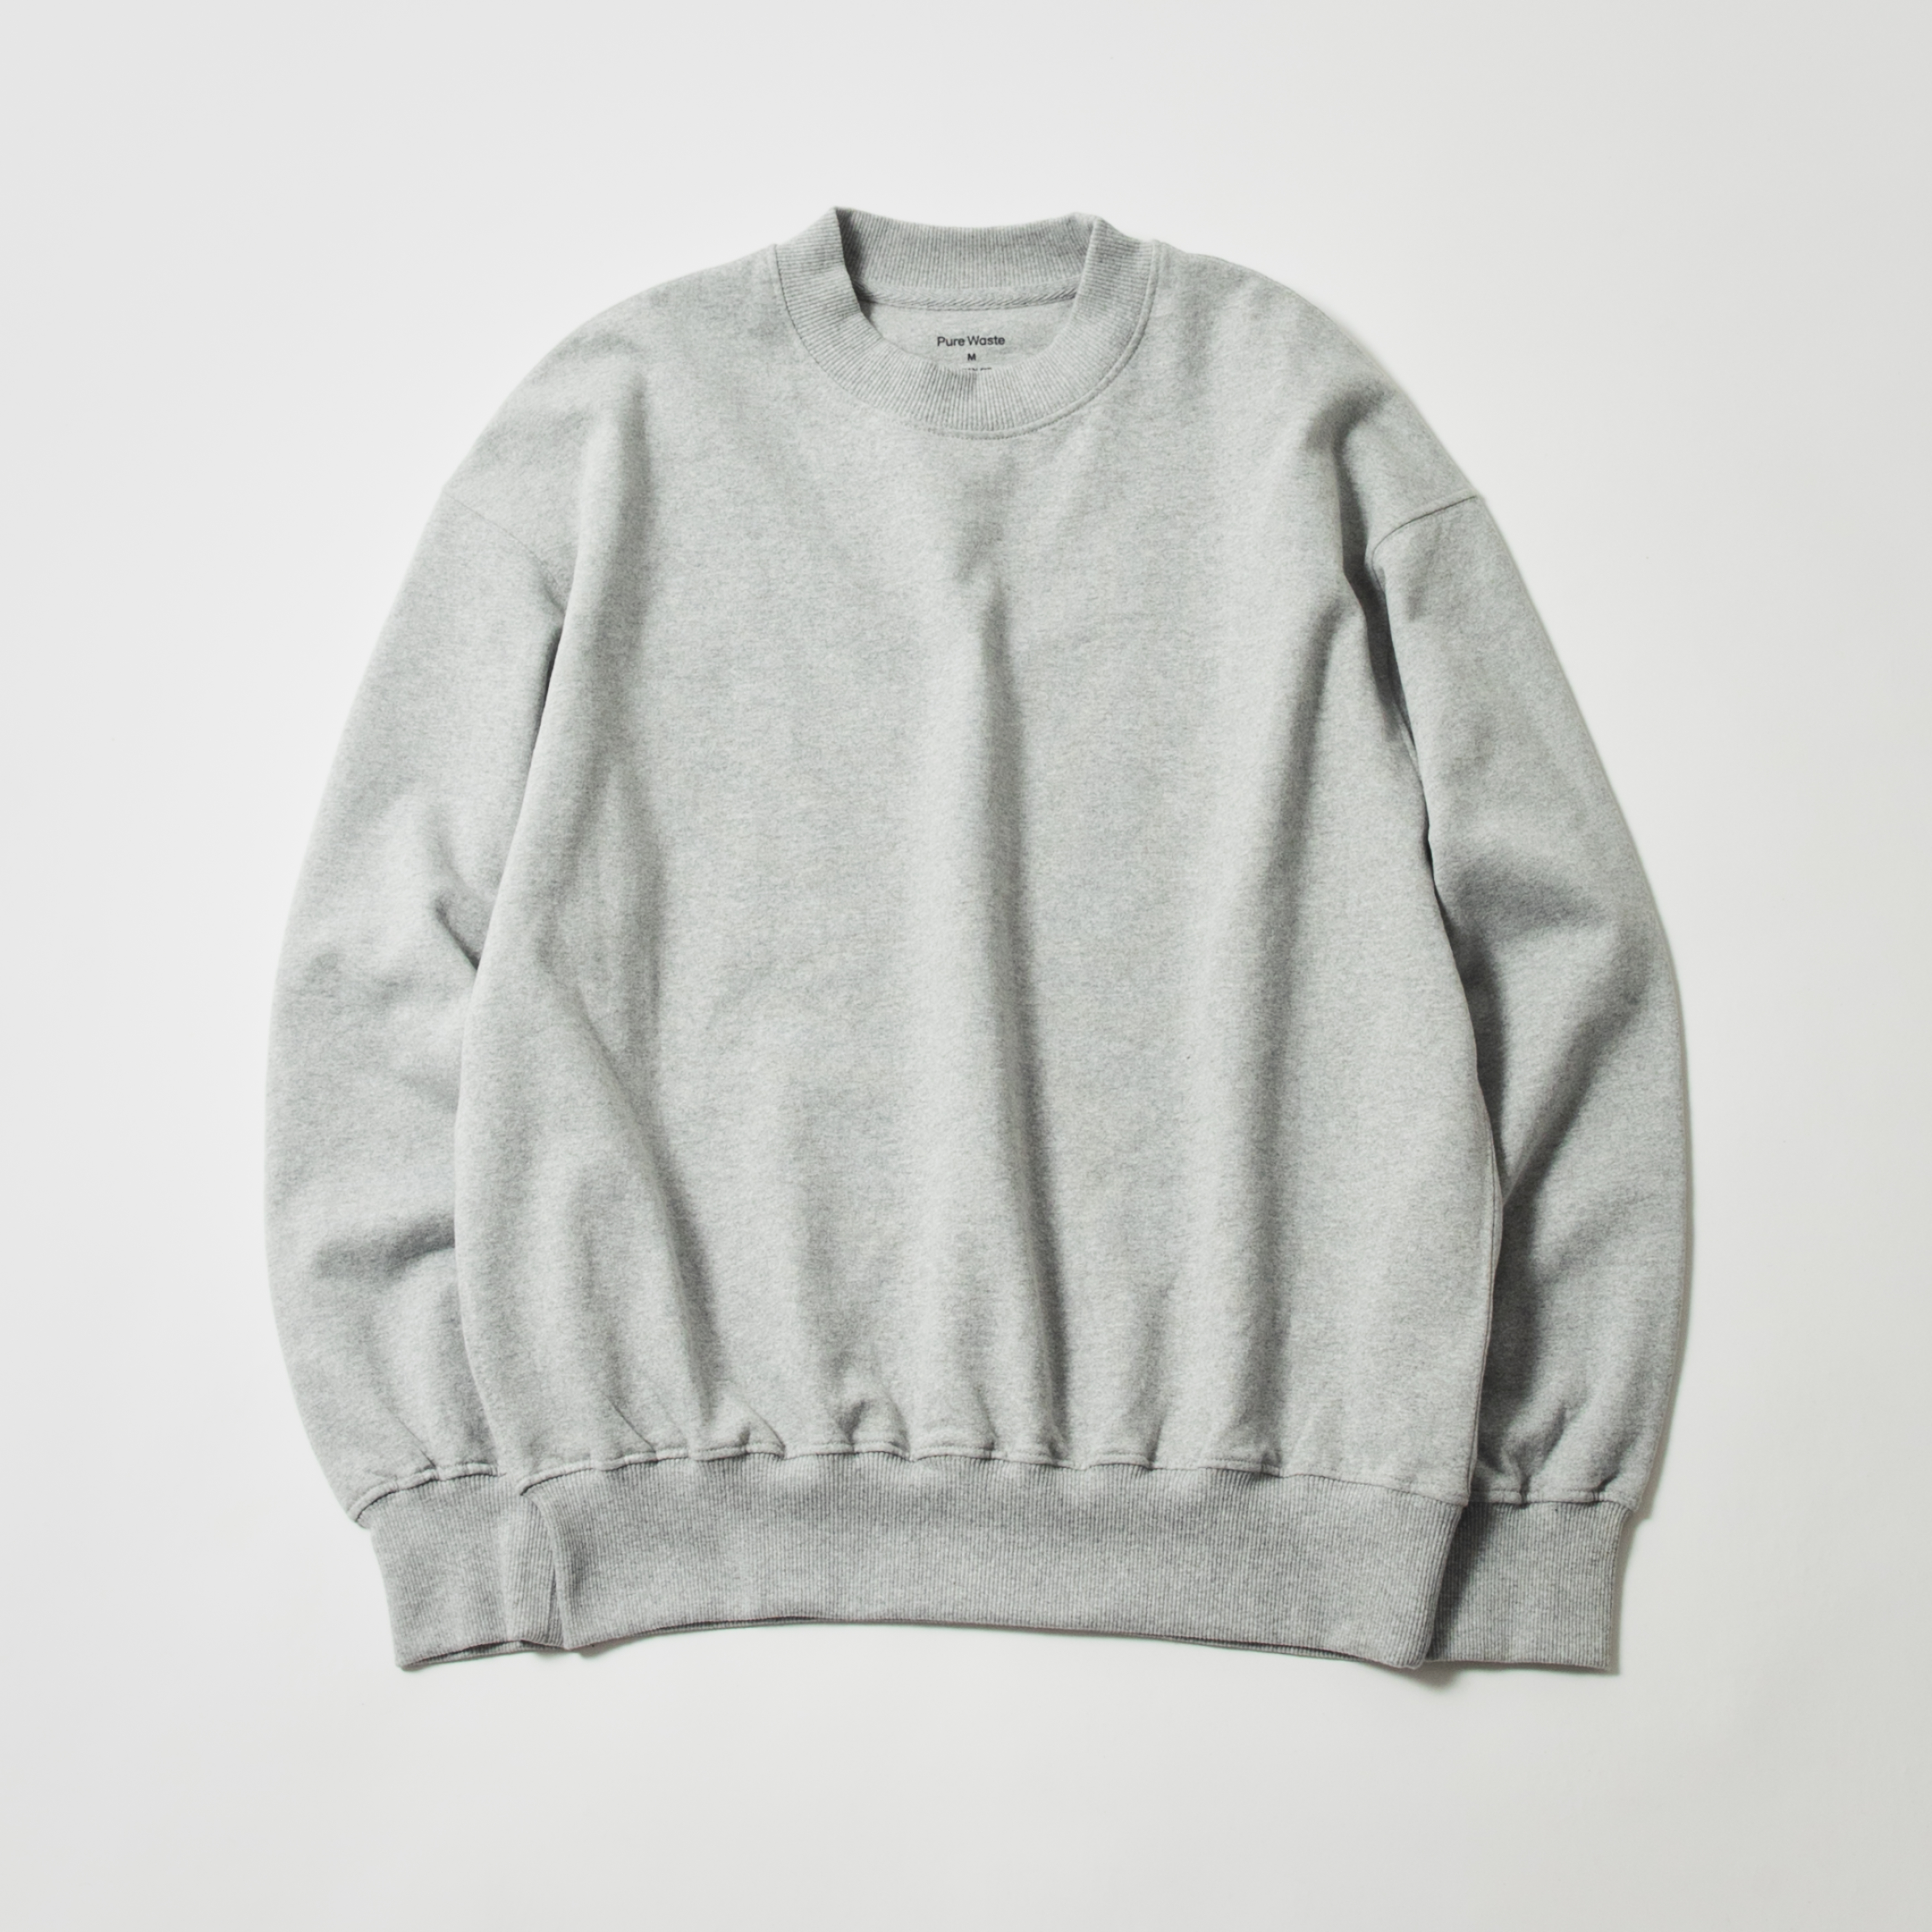 PureWaSte スウェット
JAPAN FIT UniSex SweatShirt Grey Melange